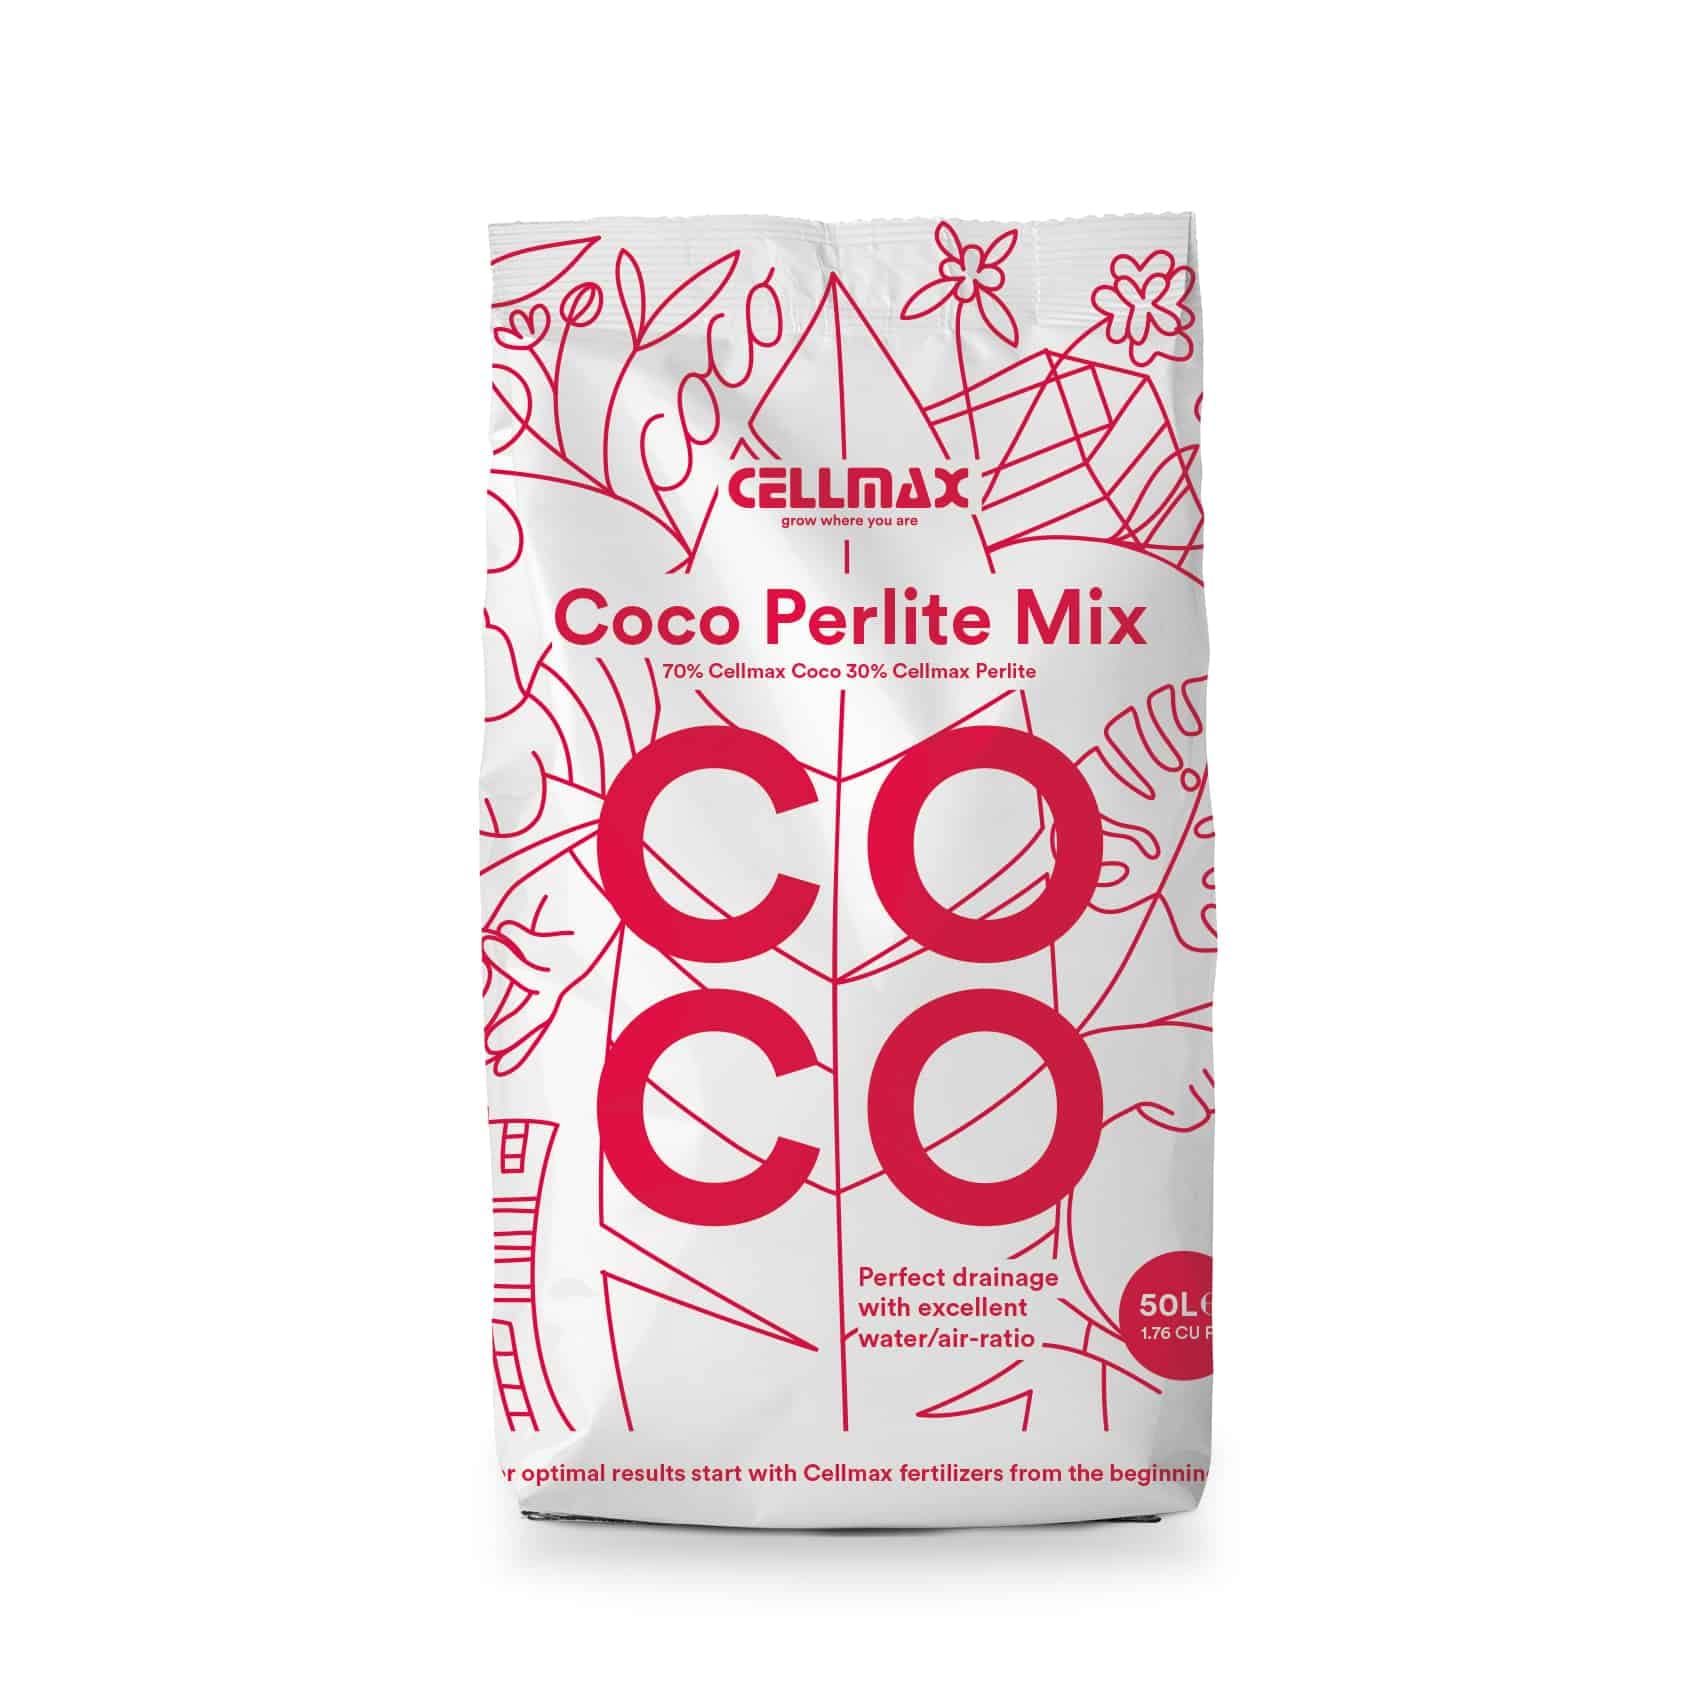 Cellmax Coco Perlite Mix | Kokosnusserde mit Perlite für eine luftige Struktur | 50L